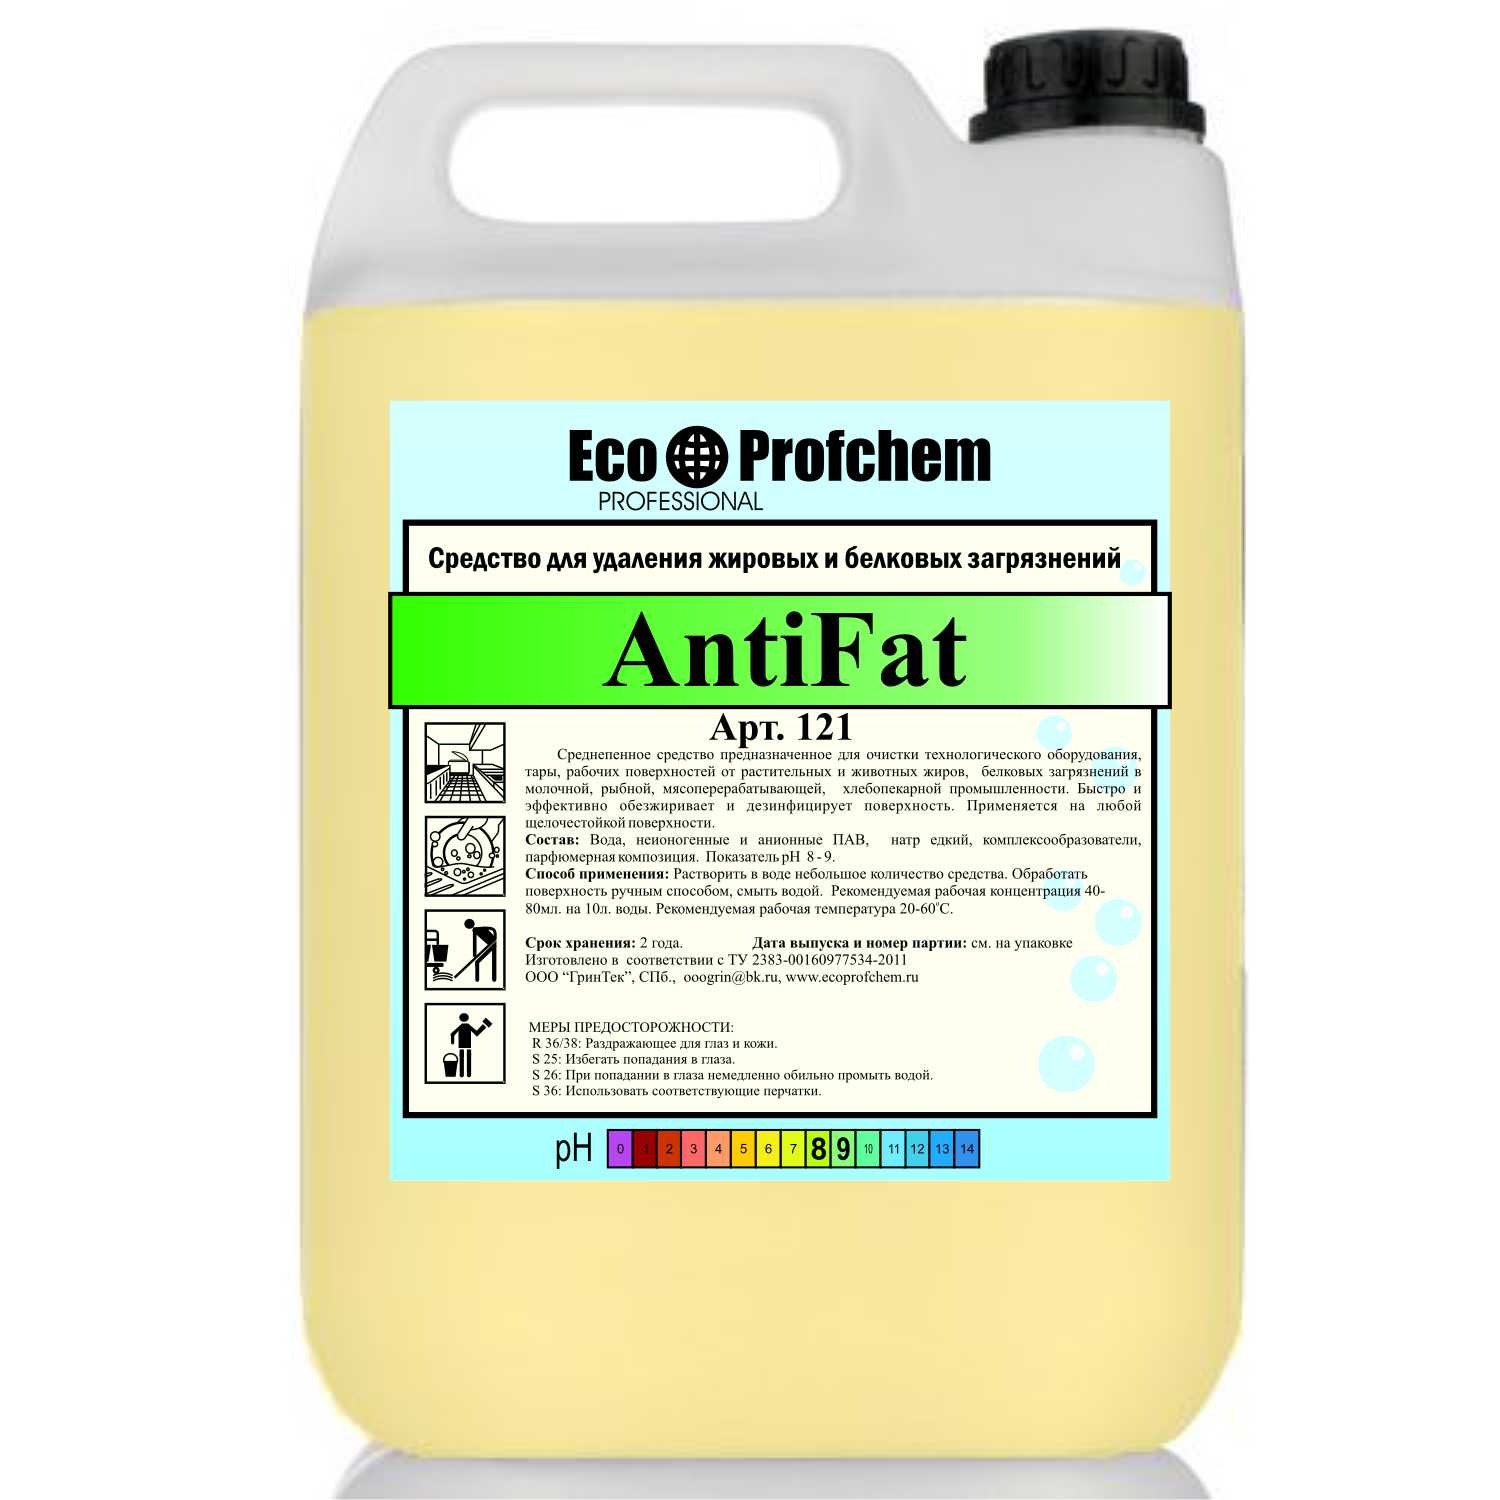 Ecoprofchem Antifat - cредство от жировых и белковых загрязнений